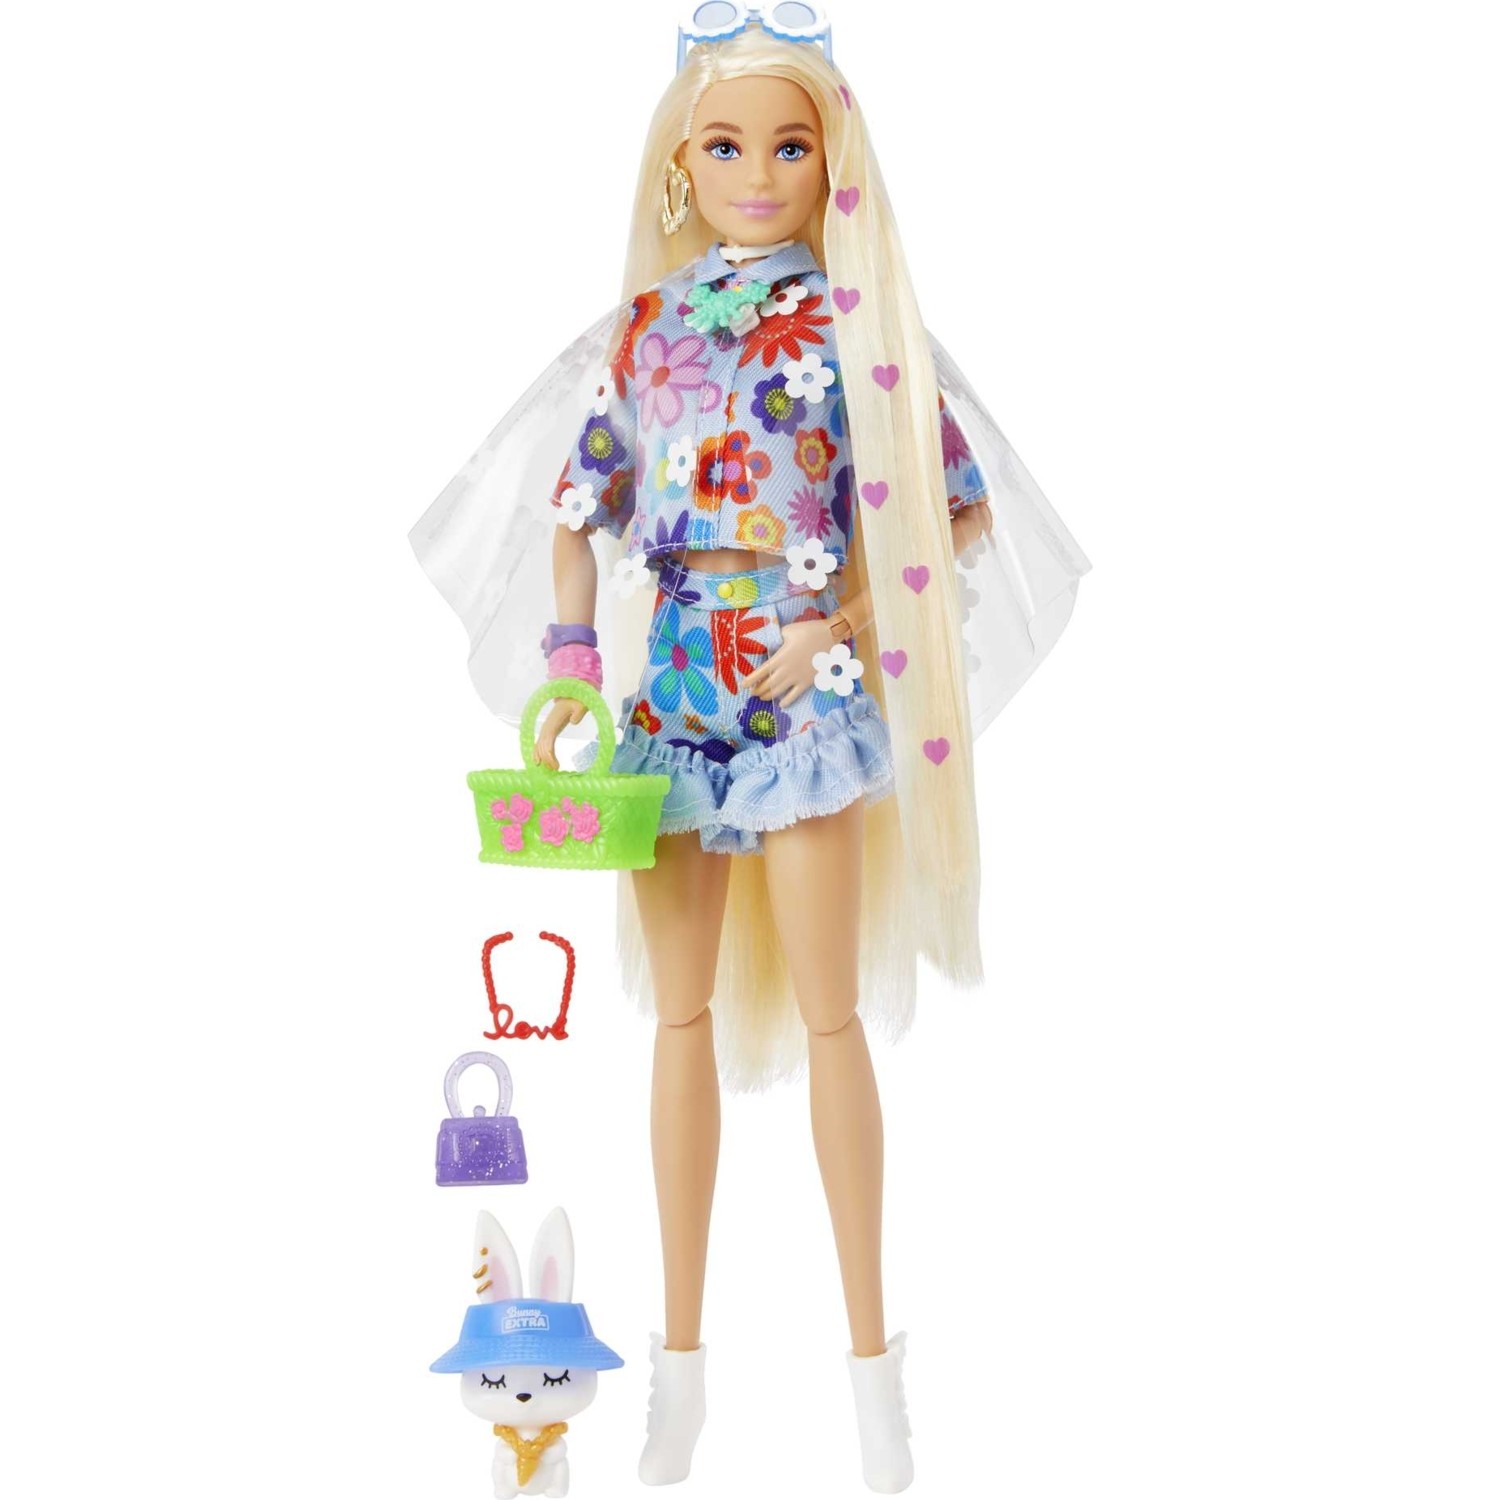 Кукла Barbie Экстра кукла в синей юбке с гибкими суставами HDJ45 куклы с нарядами барби 2